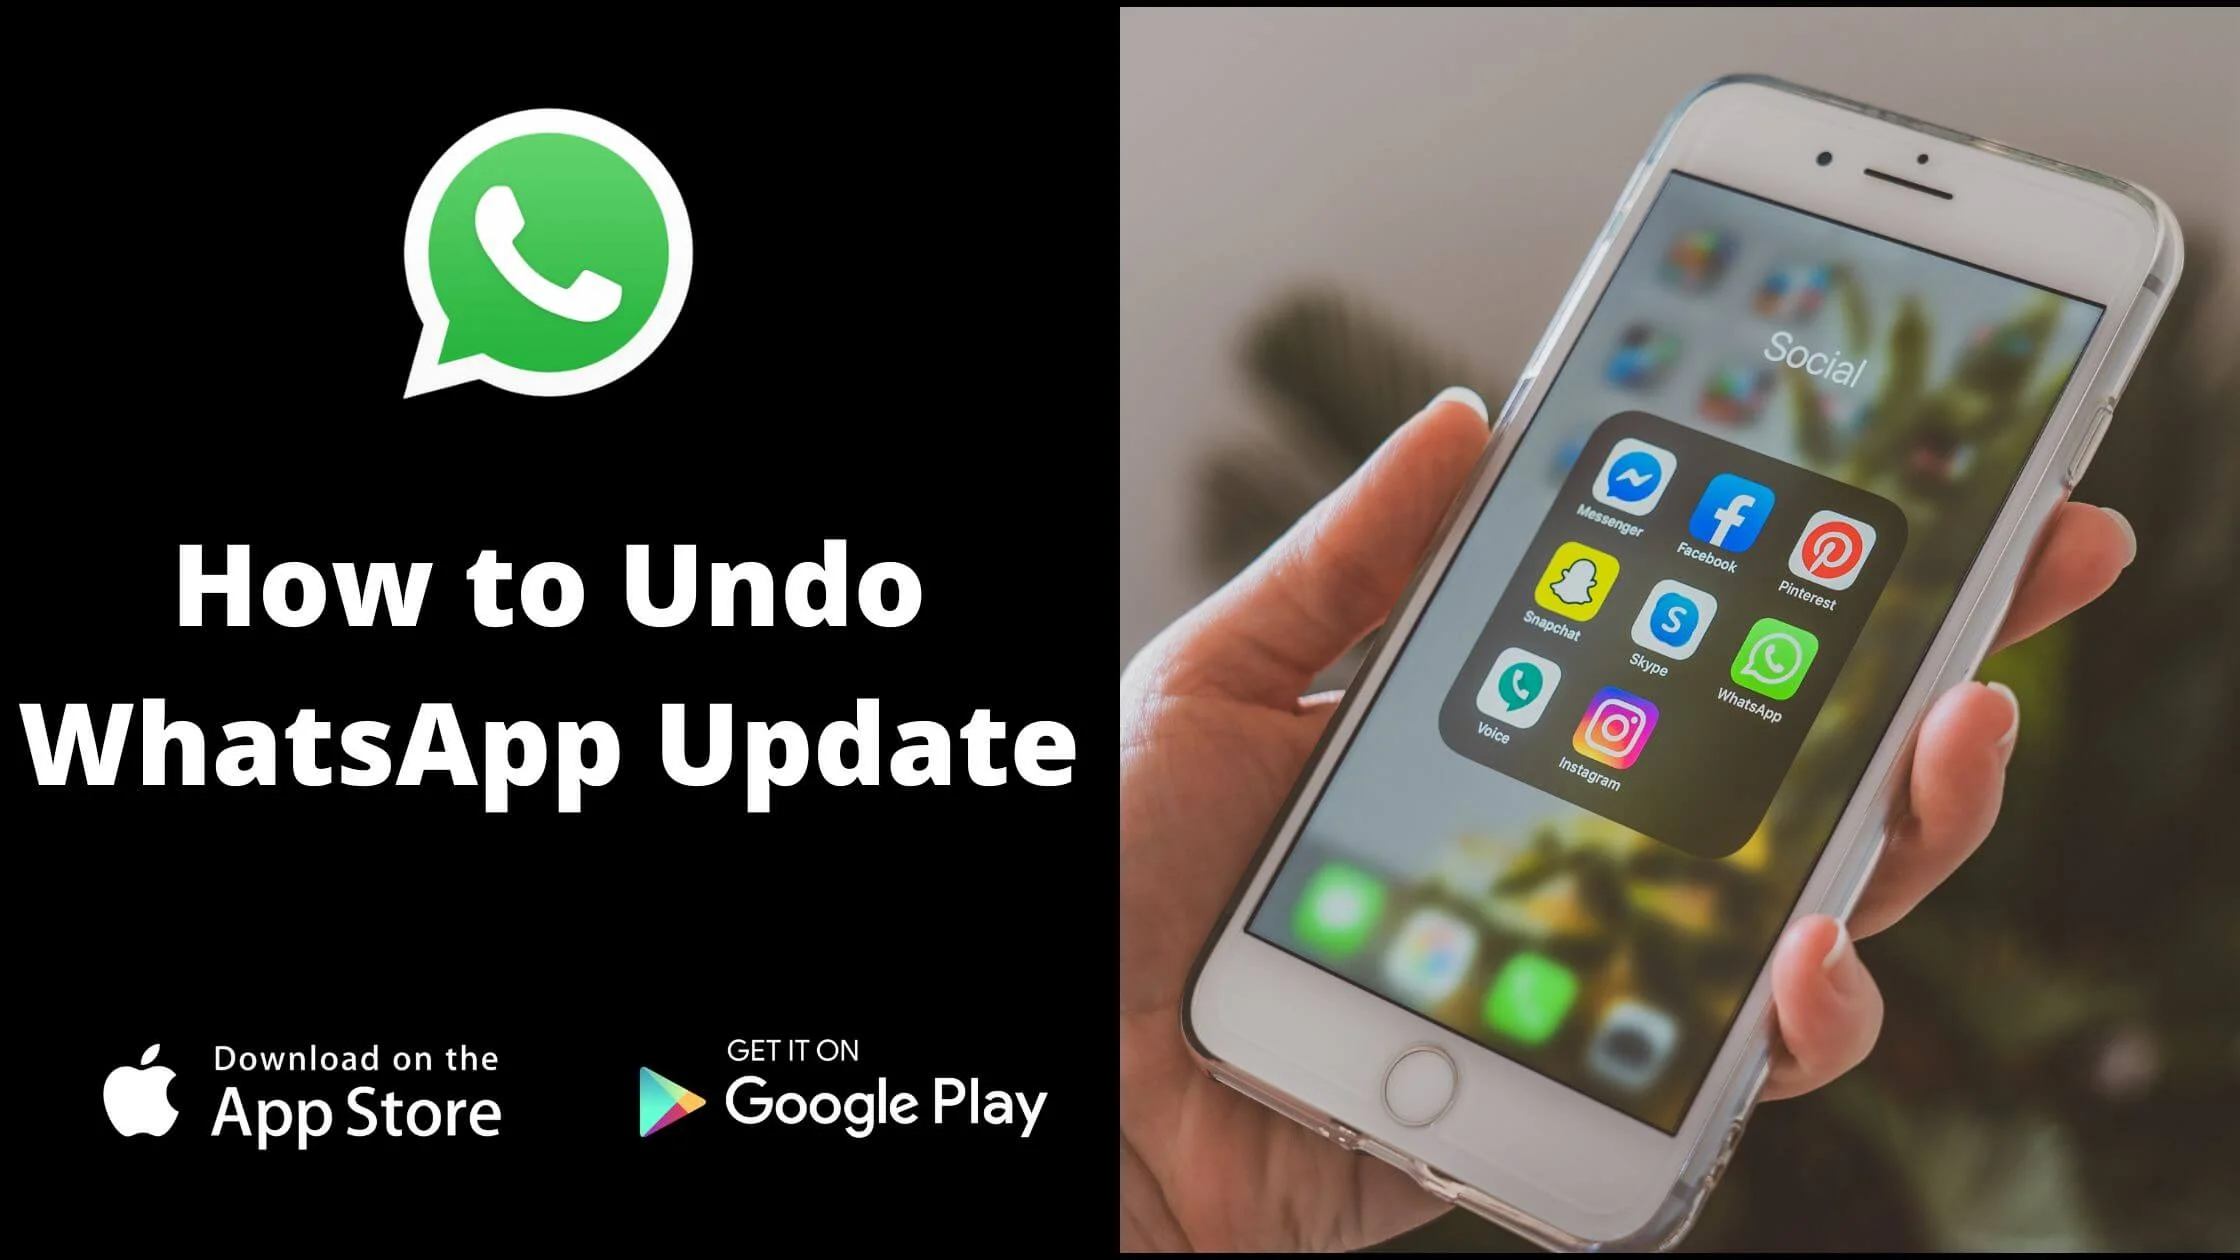 Undo WhatsApp Update